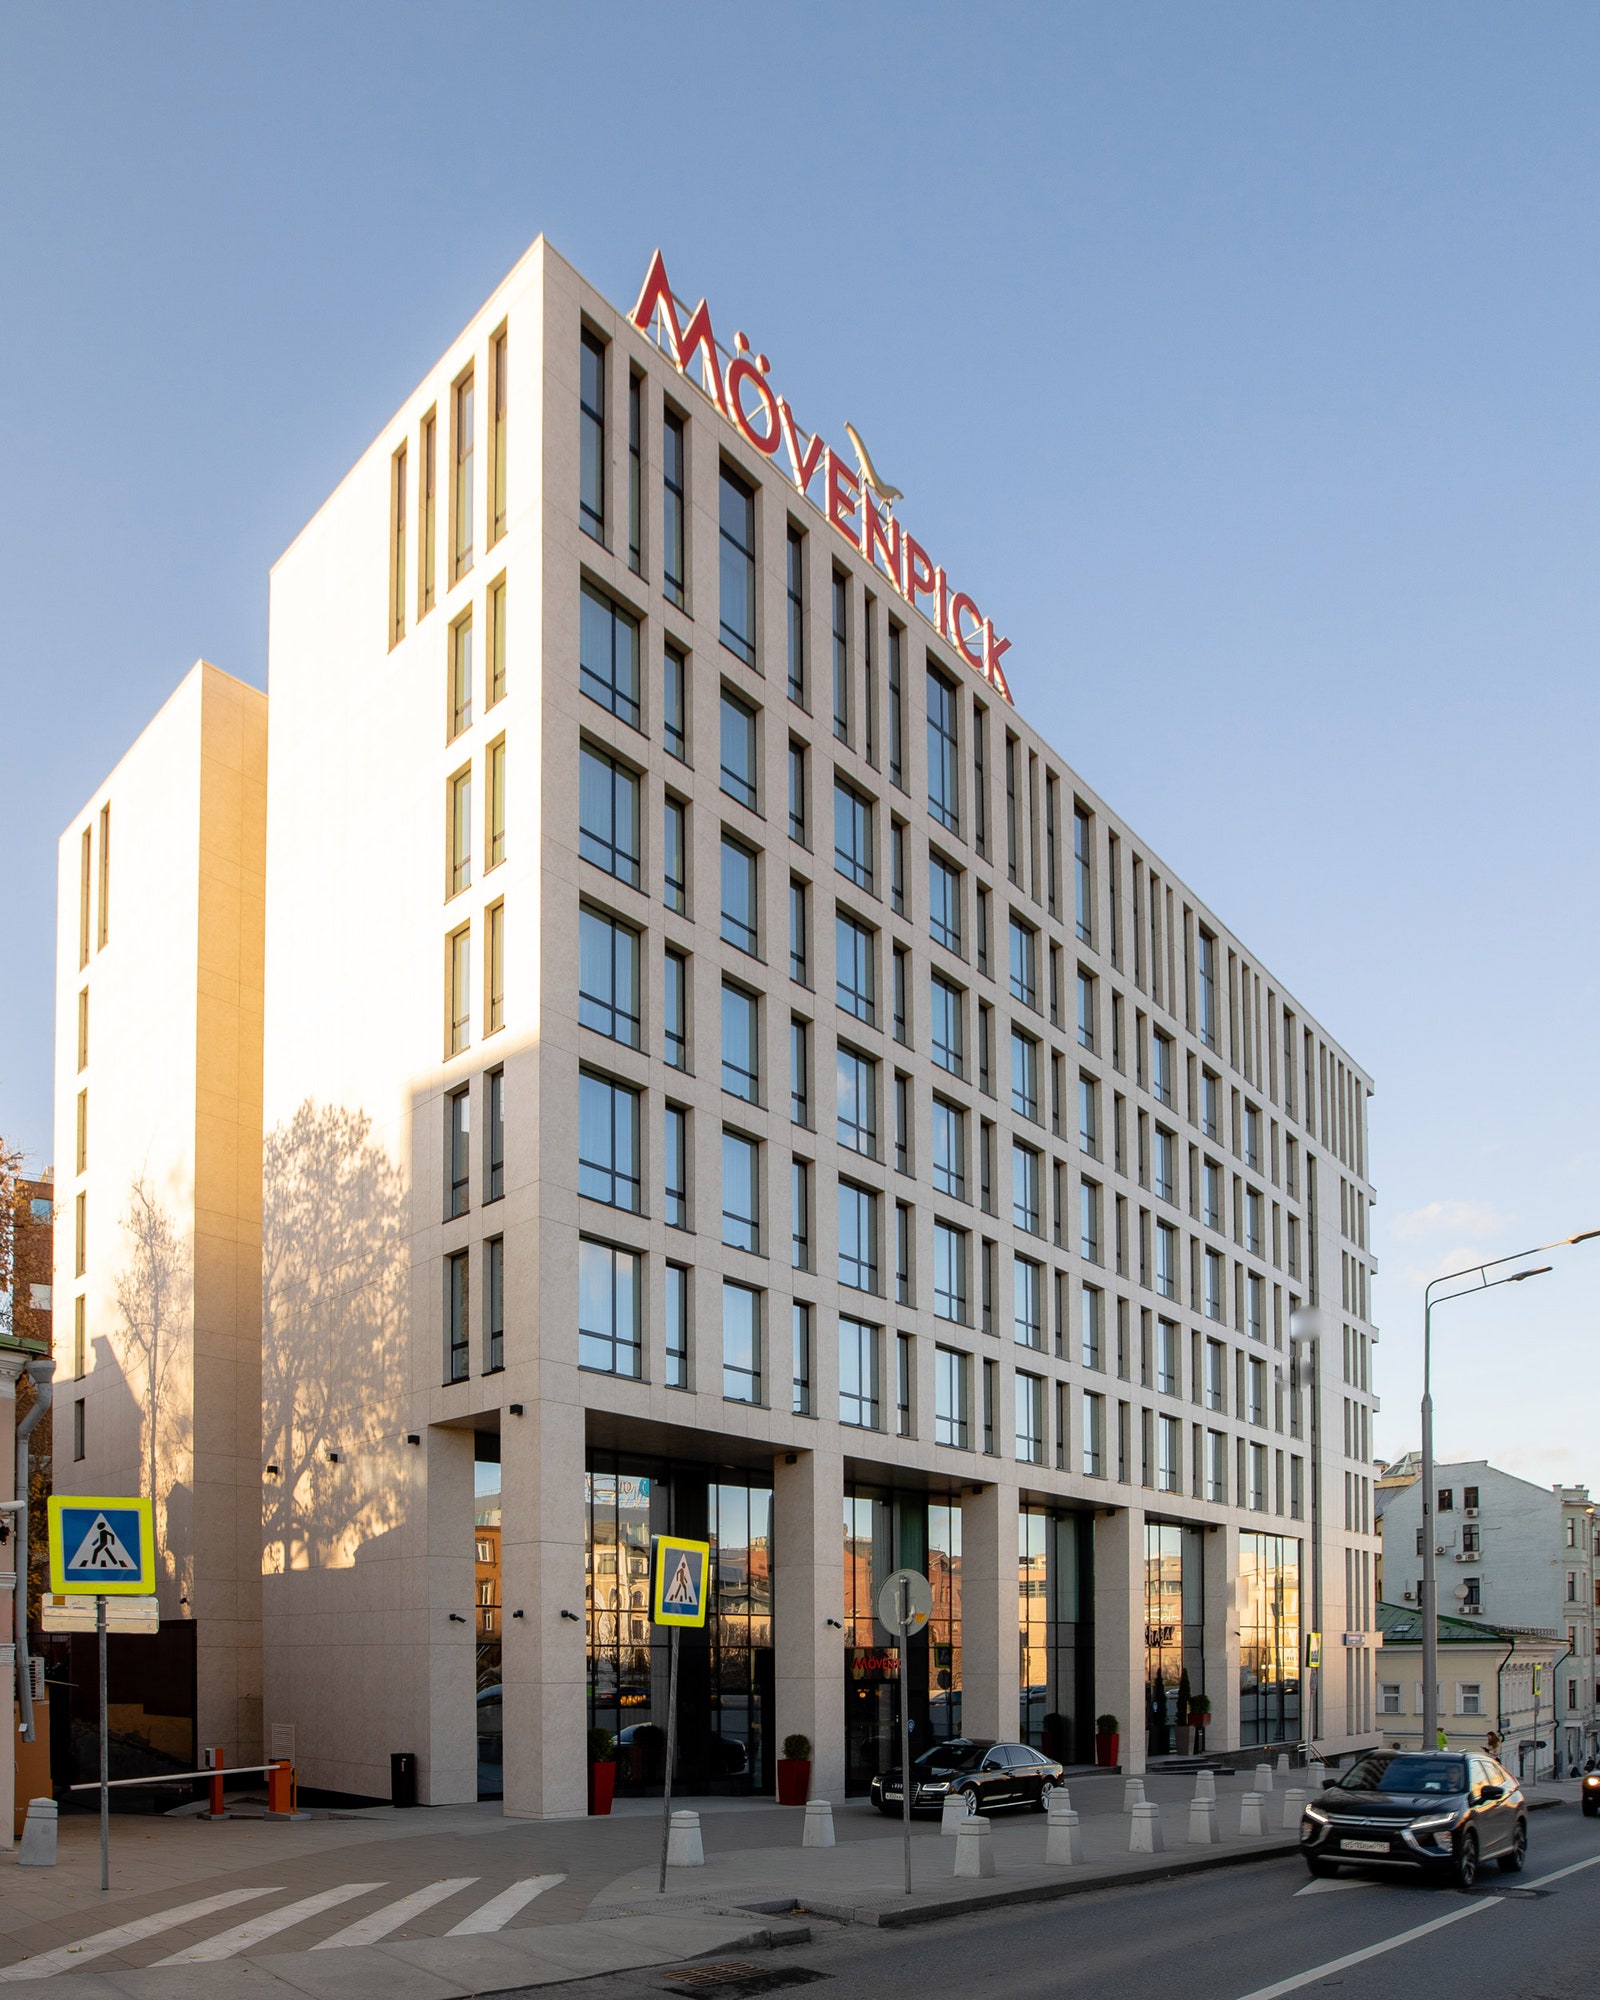 Технологичный дизайн первый отель Mövenpick в Москве